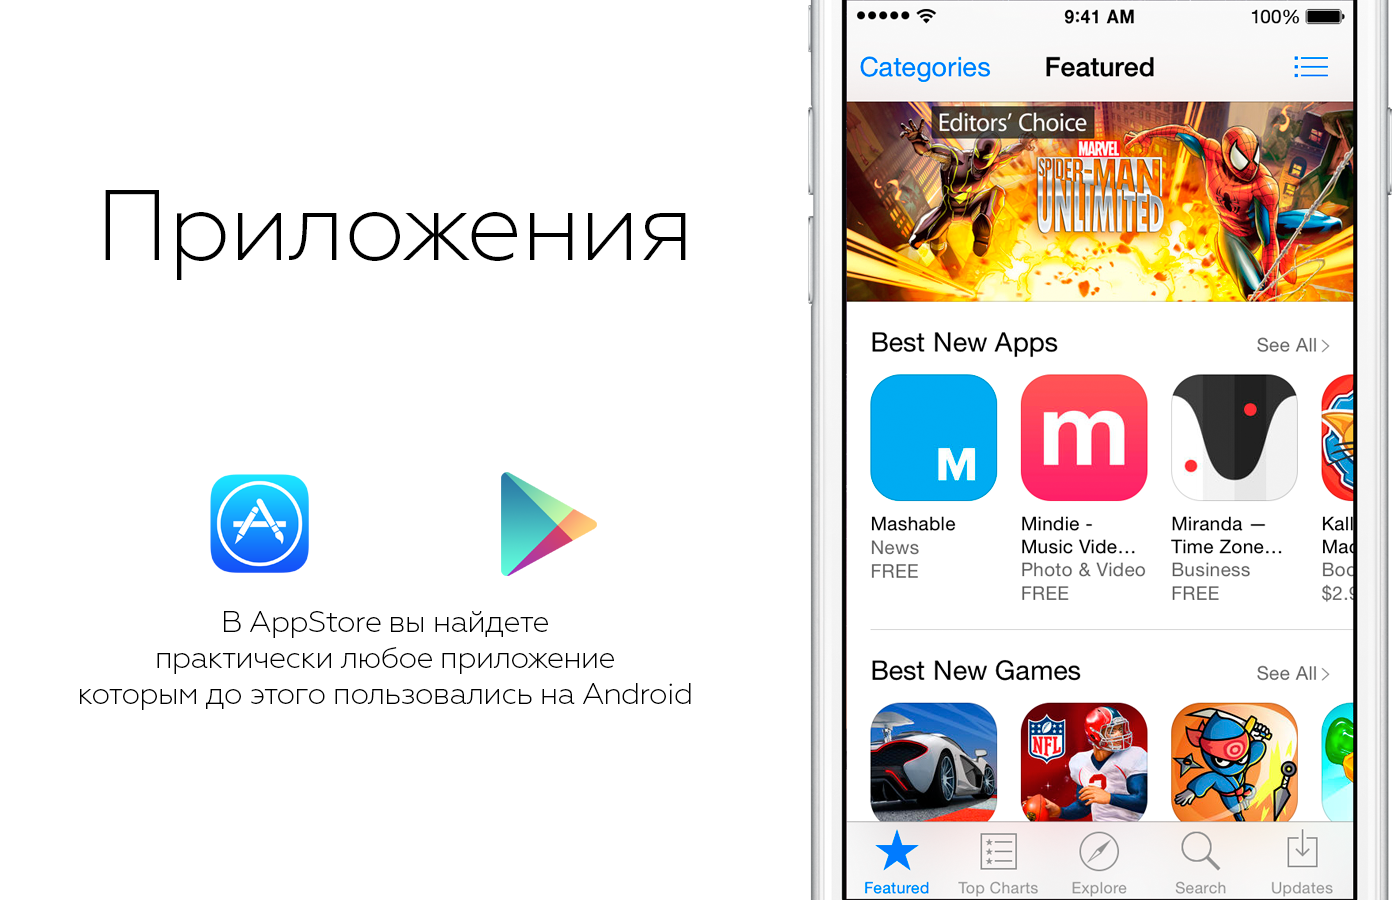 Best new apps. Переход с Android на IOS.